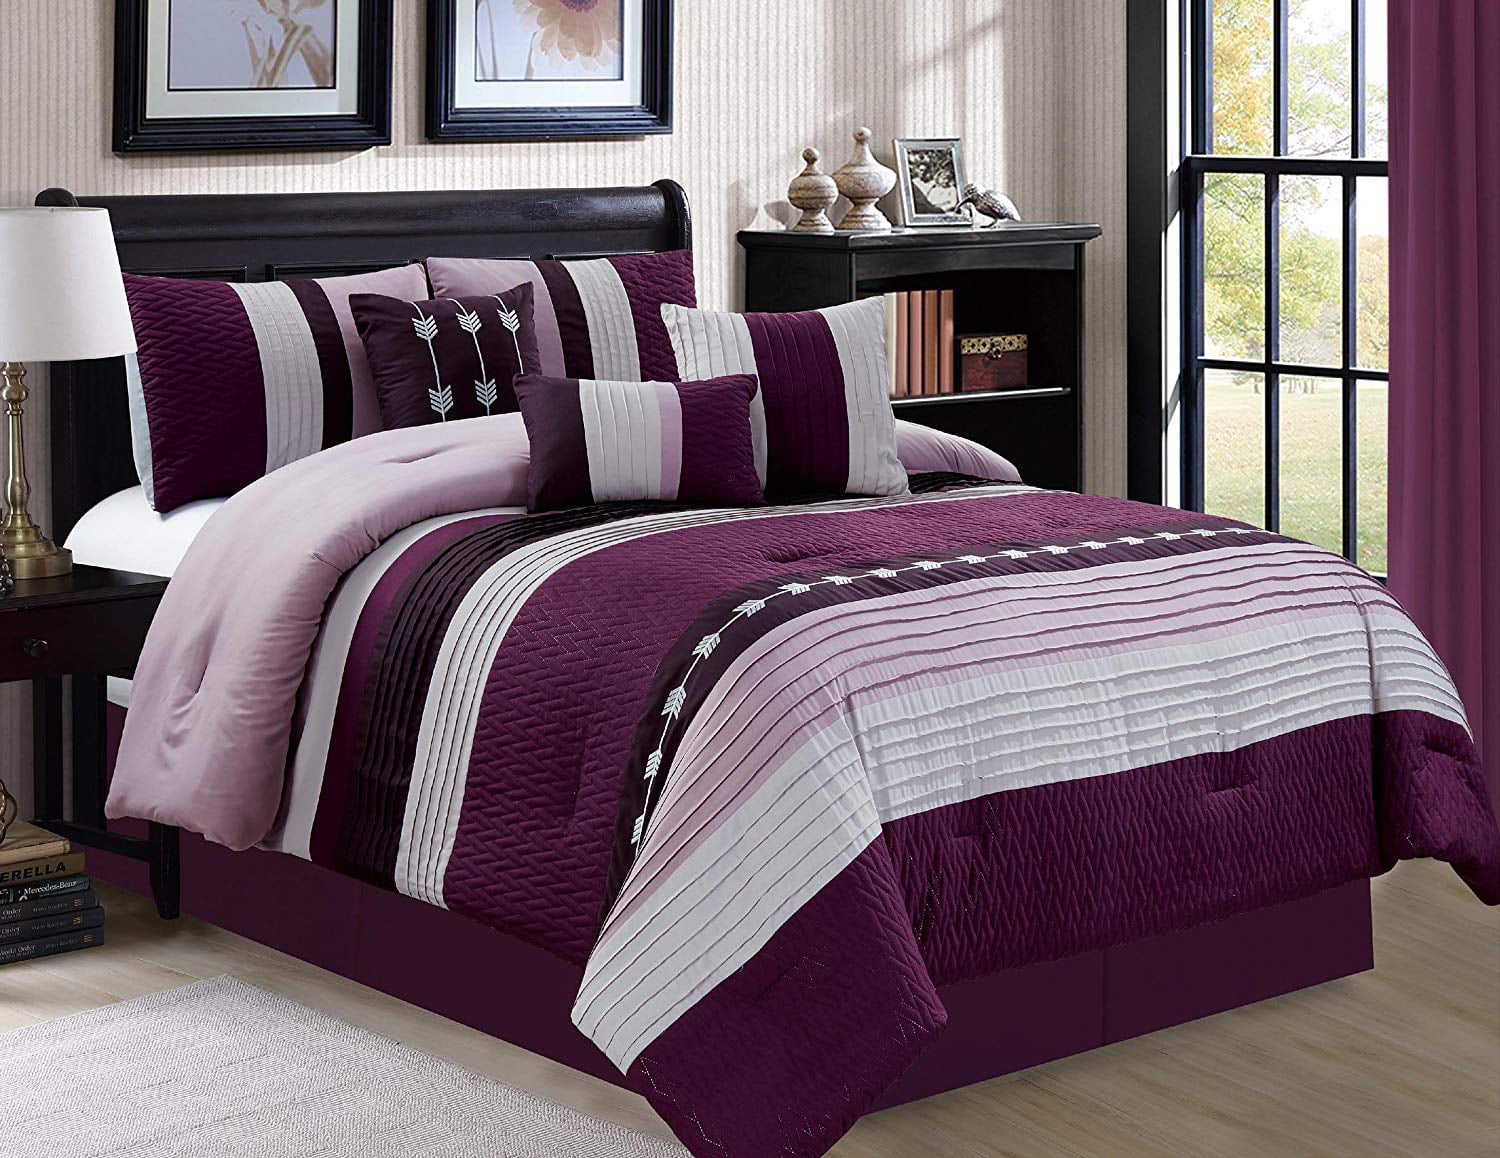 comfort bedding mattress set